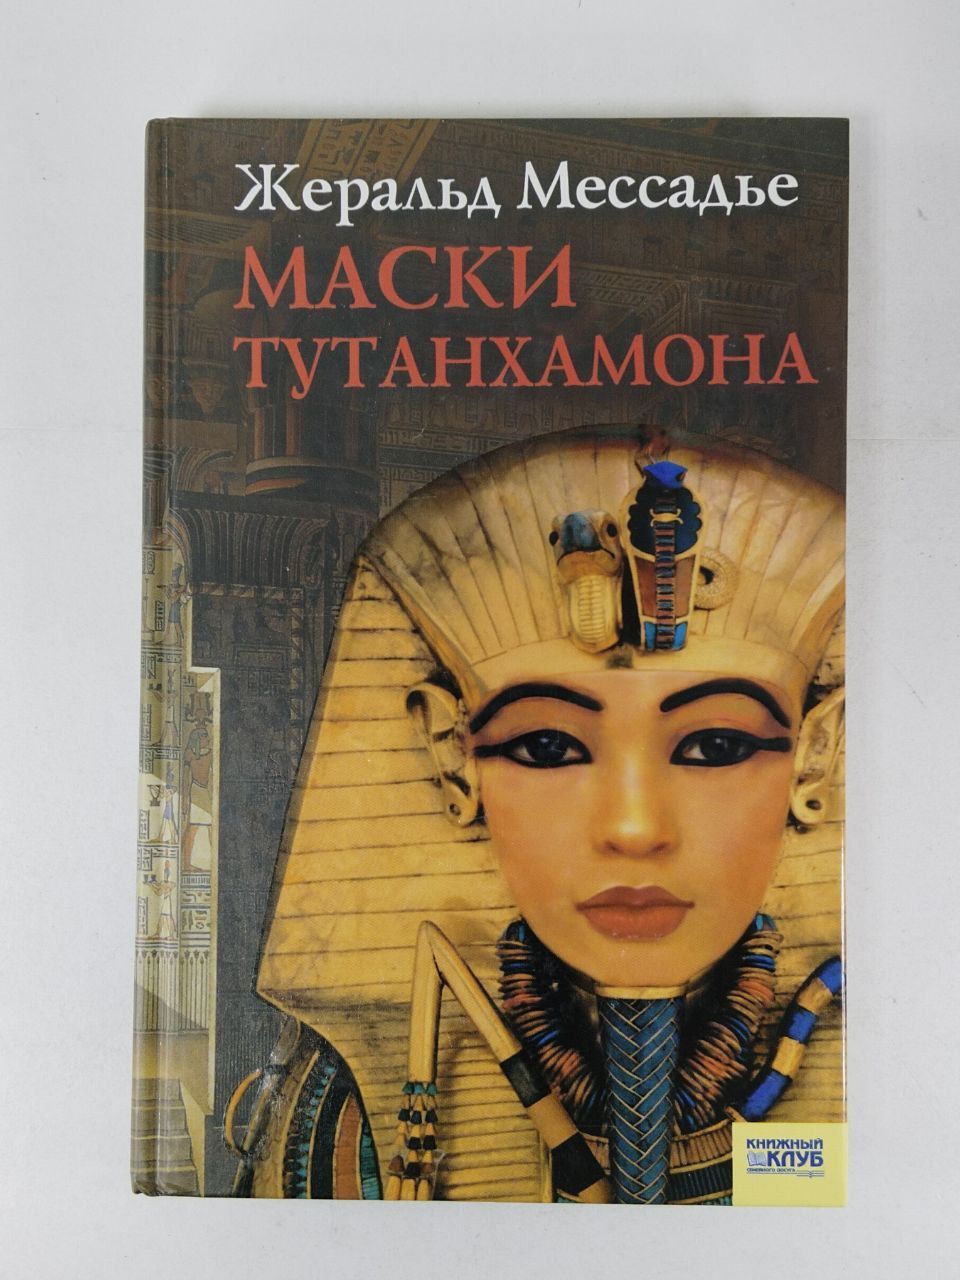 Книга про маски. Маски Тутанхамона книга Жеральд Мессадье. Жеральд Мессадье. Жеральд Мессадье книги. Тутанхамон на обложке книги.